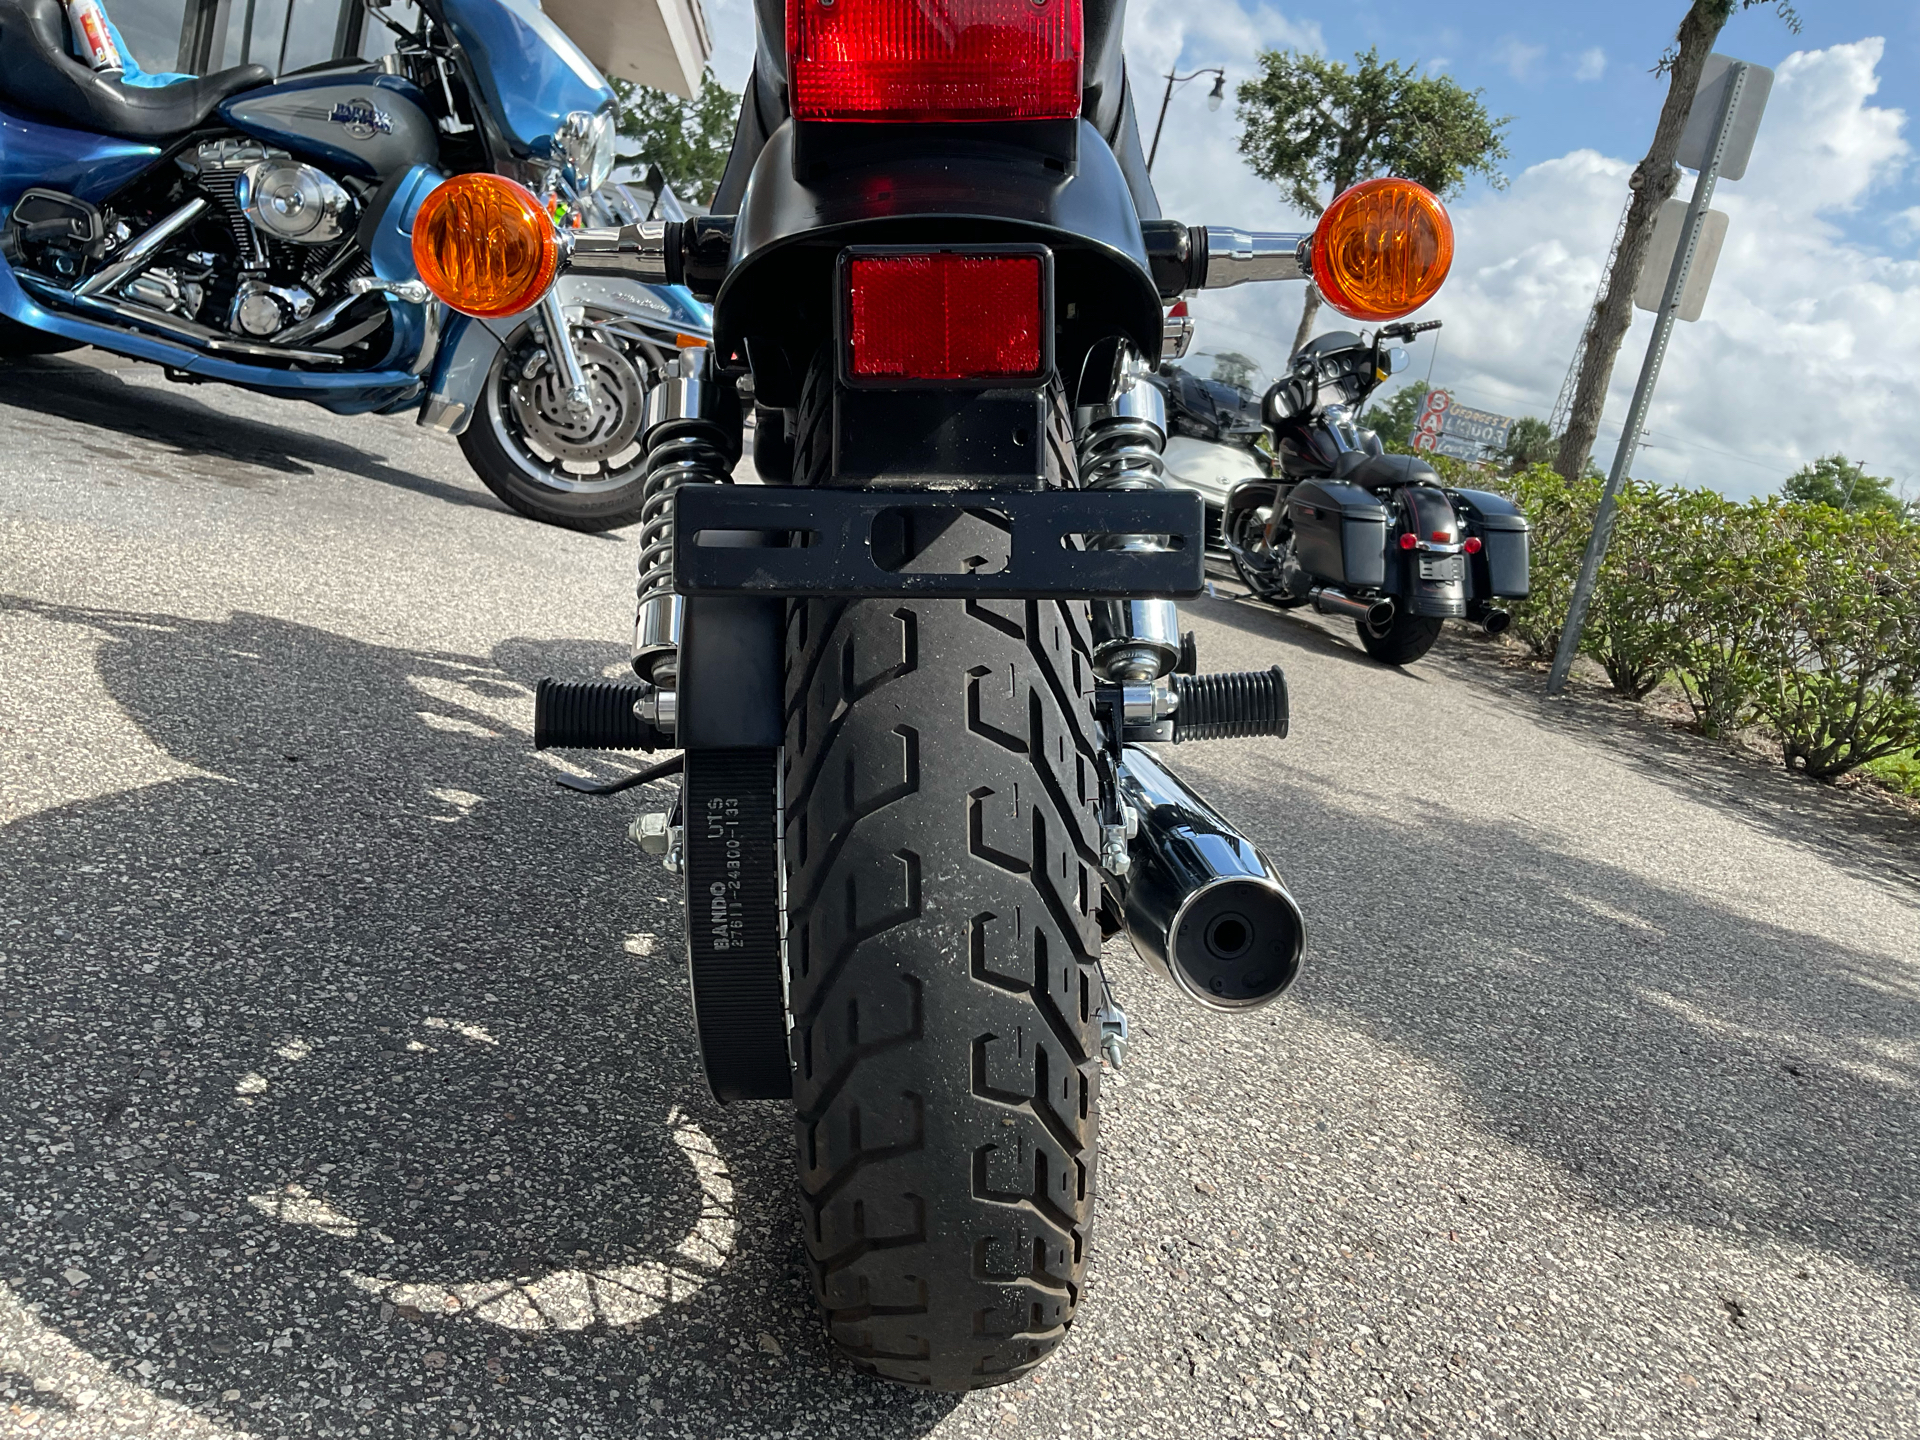 2019 Suzuki Boulevard S40 in Sanford, Florida - Photo 21